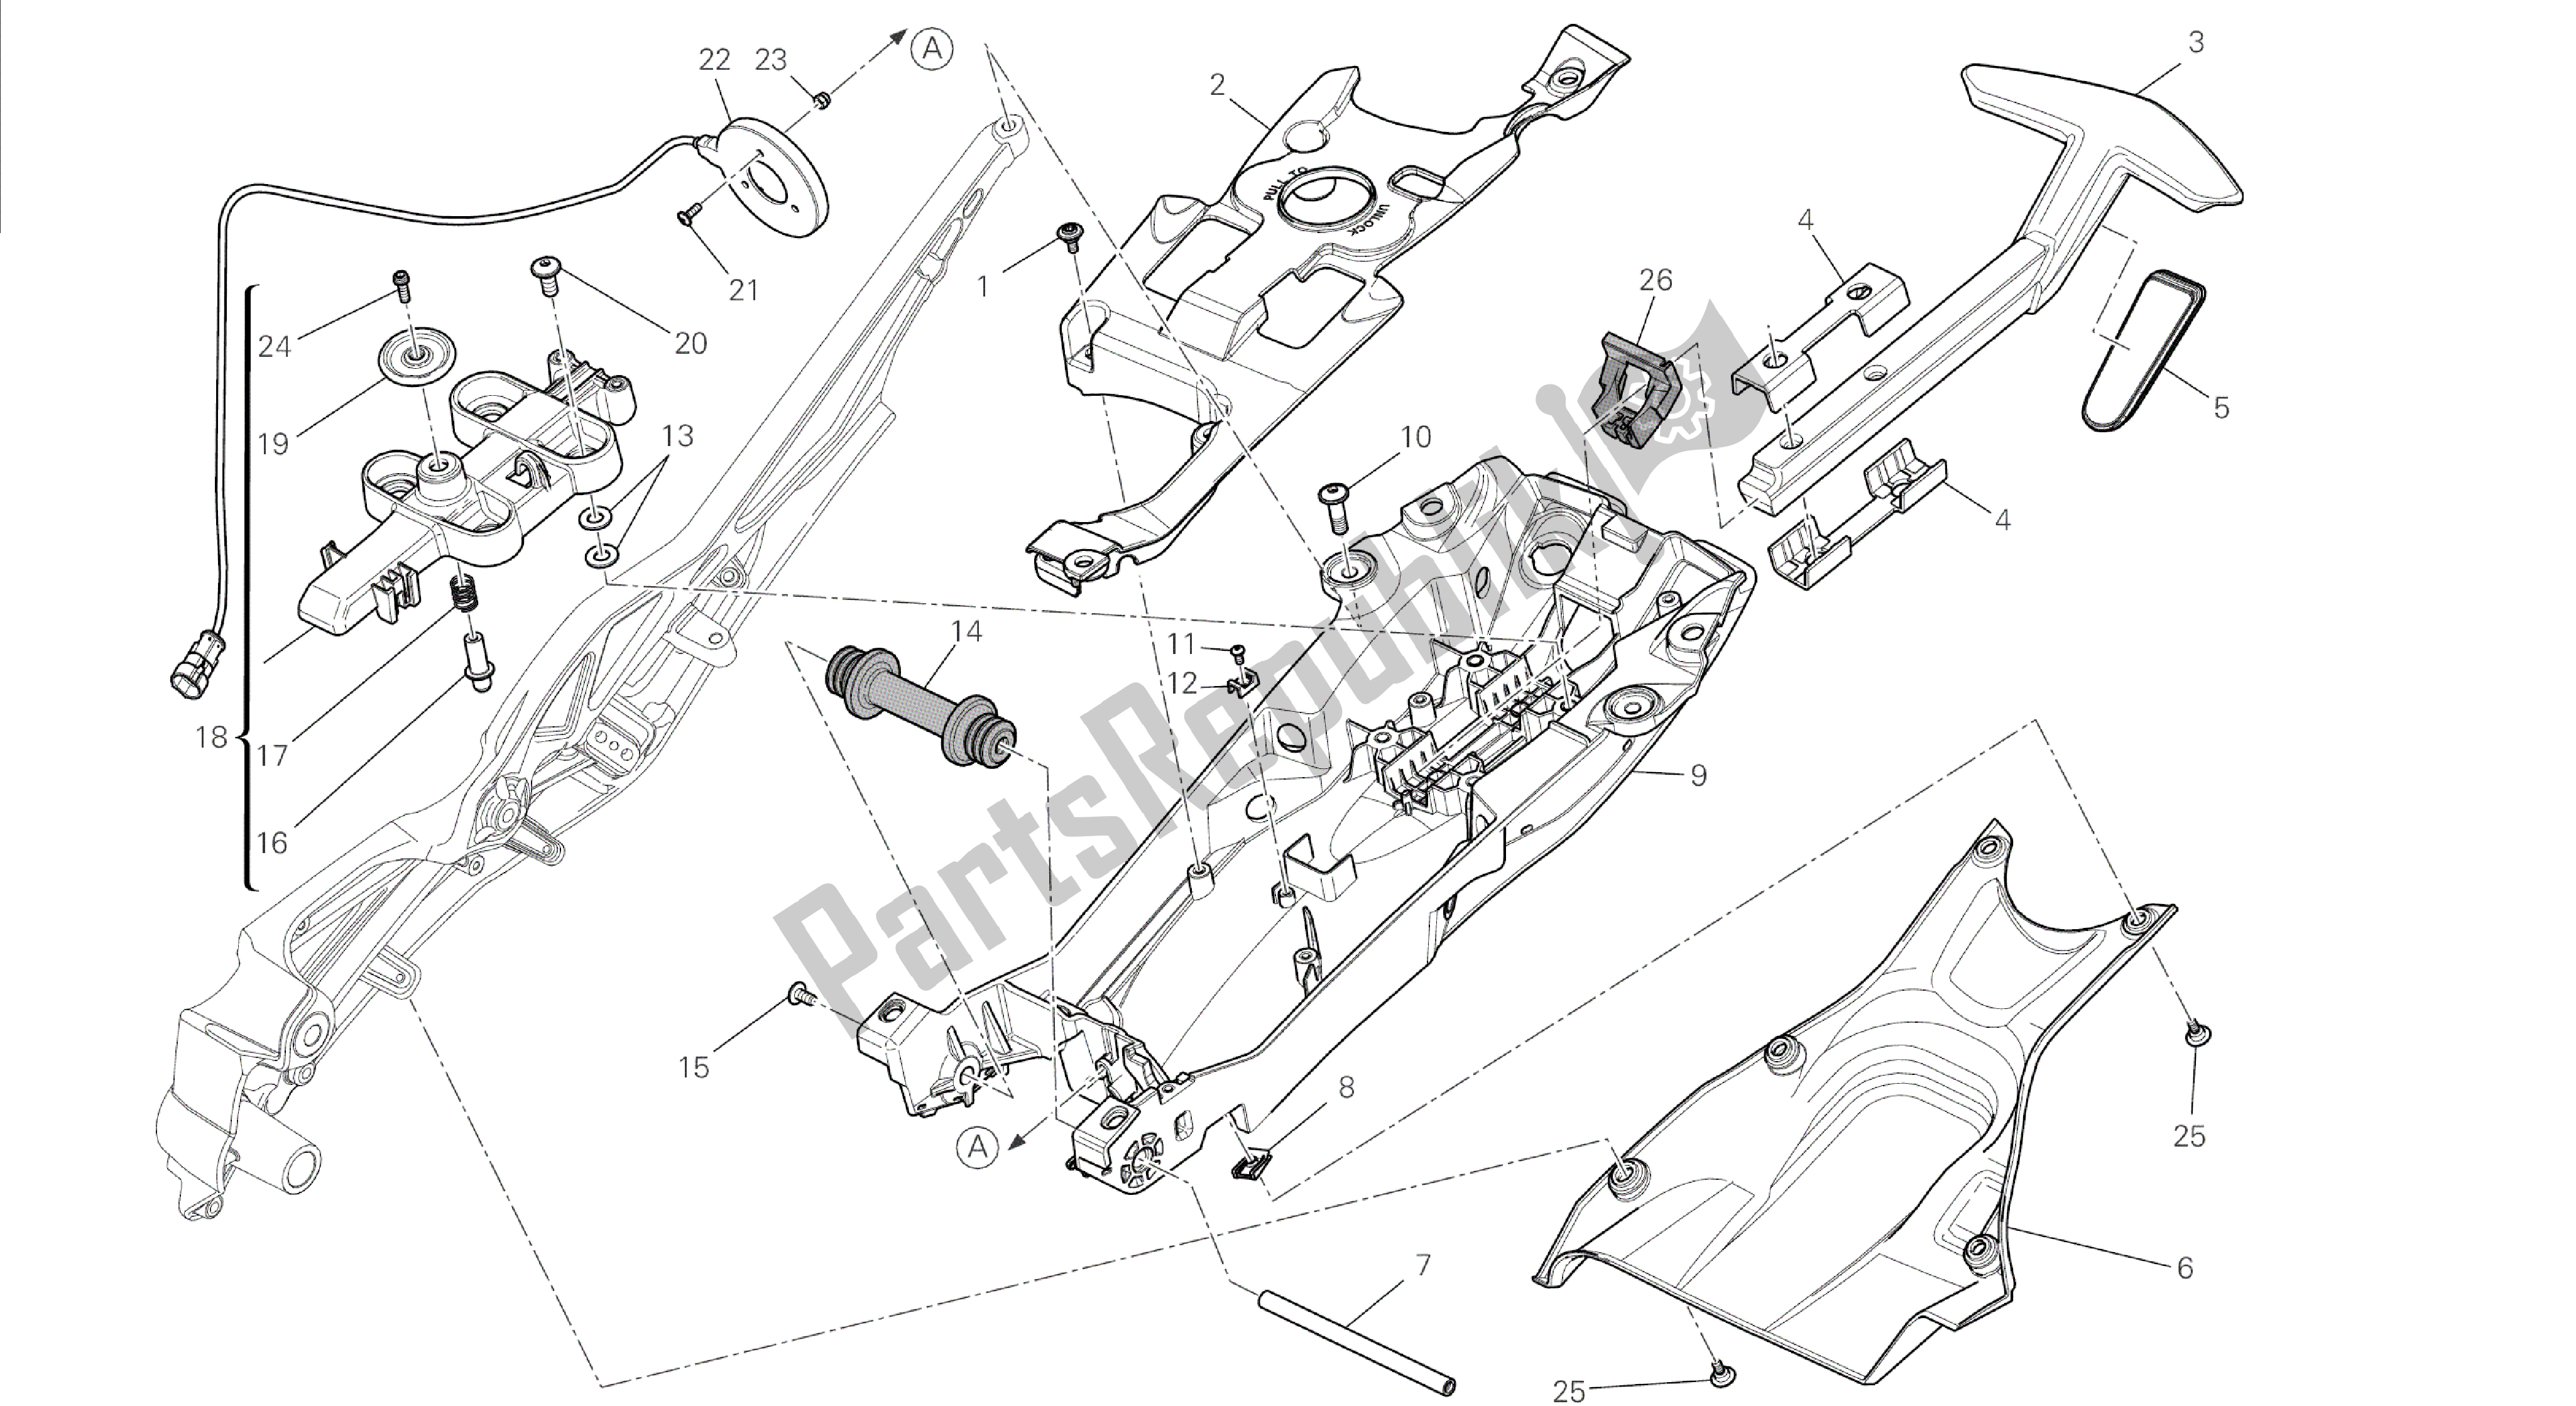 Tutte le parti per il Disegno 027 - Telaio Posteriore Comp. [mod: Dvl] Frame Di Gruppo del Ducati Diavel 1200 2014